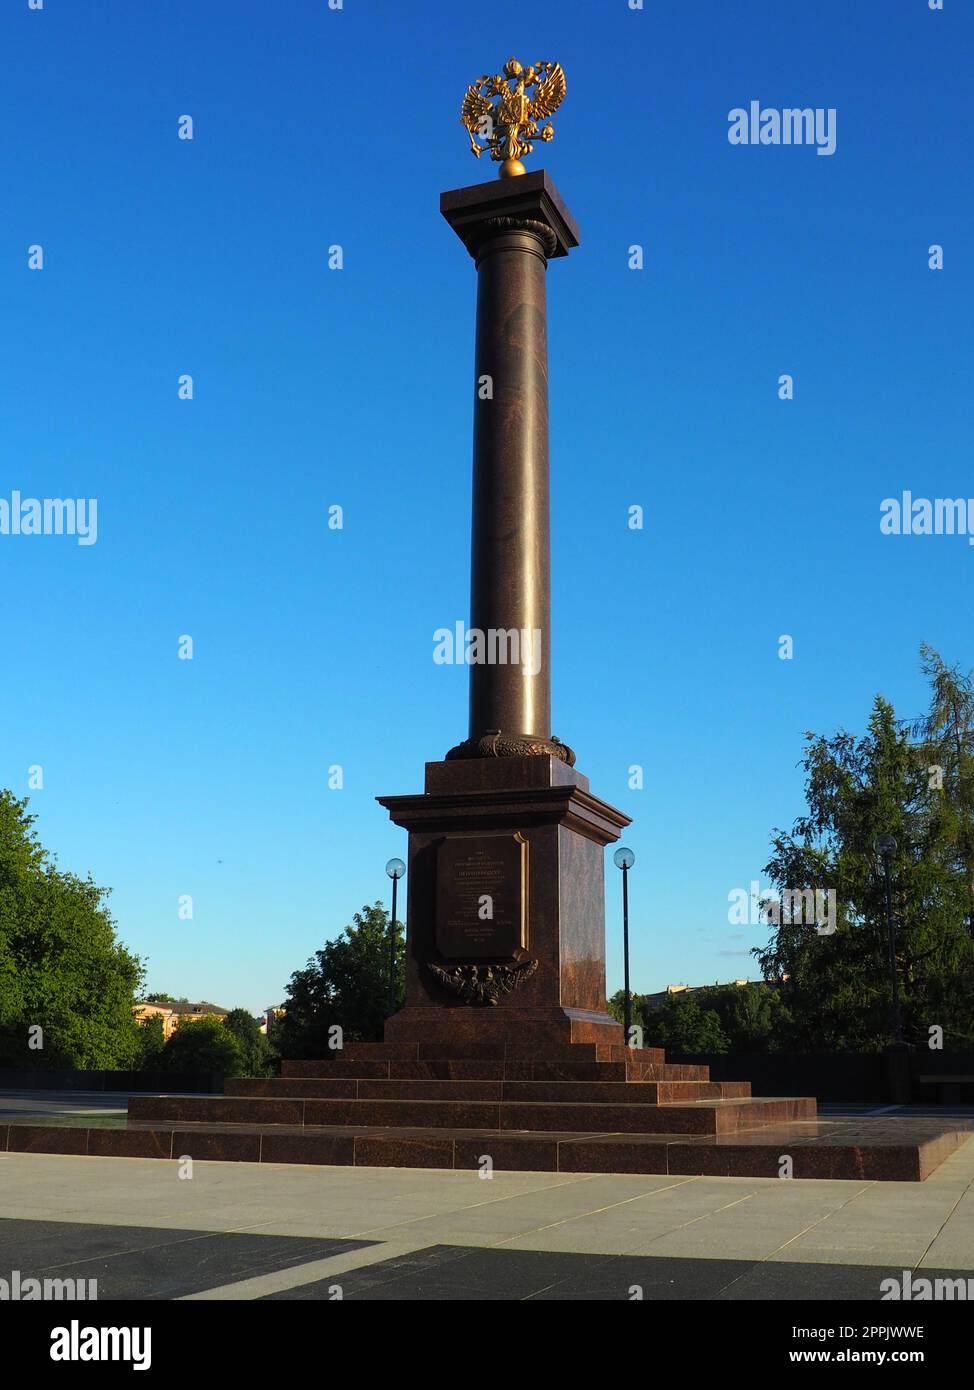 Petrozavodsk, Carélie, 3 août 2022 Monument-stèle ville de gloire militaire, titre honorifique. Colonne de granit avec un aigle à double tête en bronze. Piédestal sur l'allée des villes sœurs, place Kirov Banque D'Images